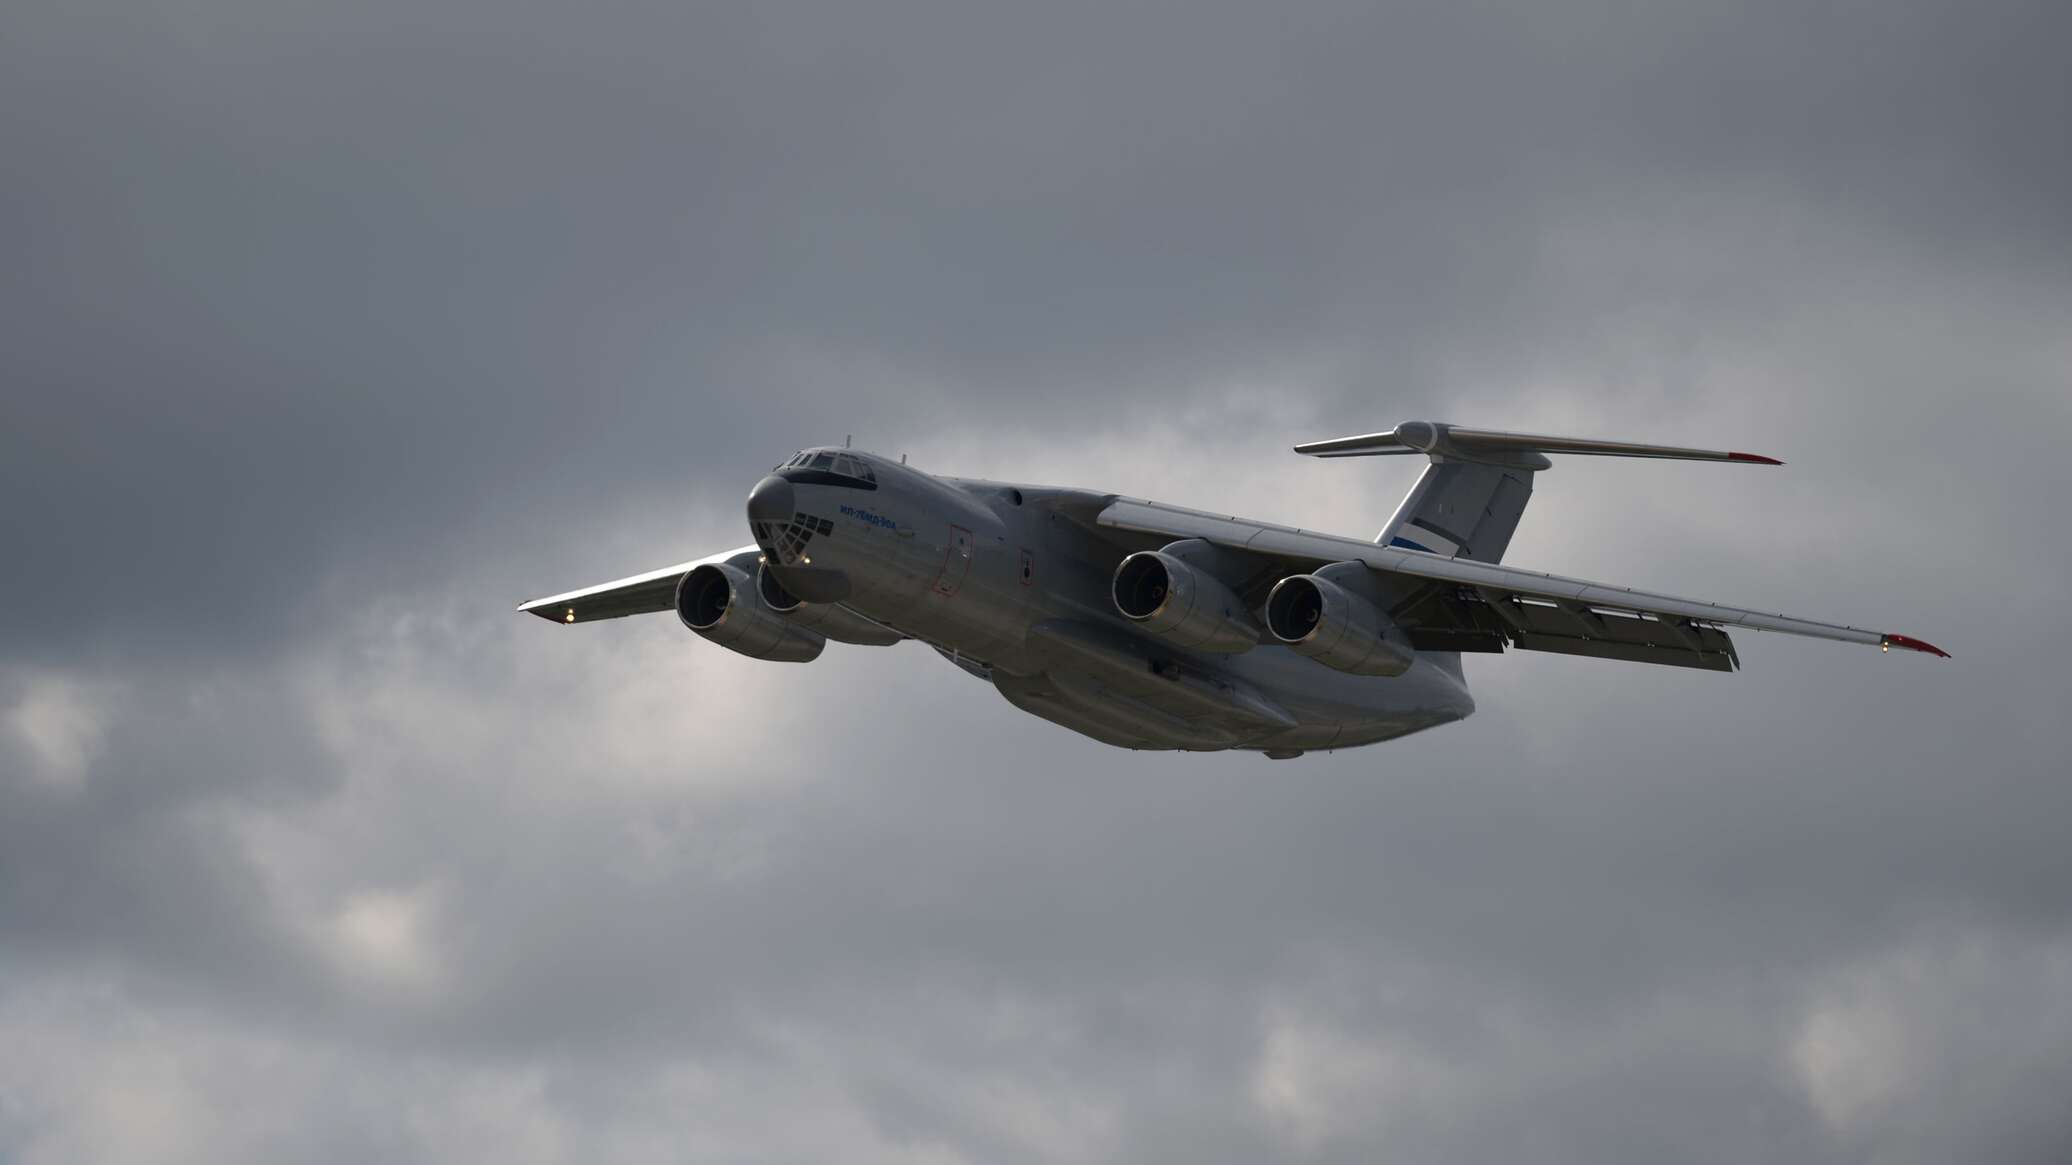 القوات الروسية تتسلم طائرة "Il-76MD" حديثة مع زيادة في مدى الطيران بنسبة 15%